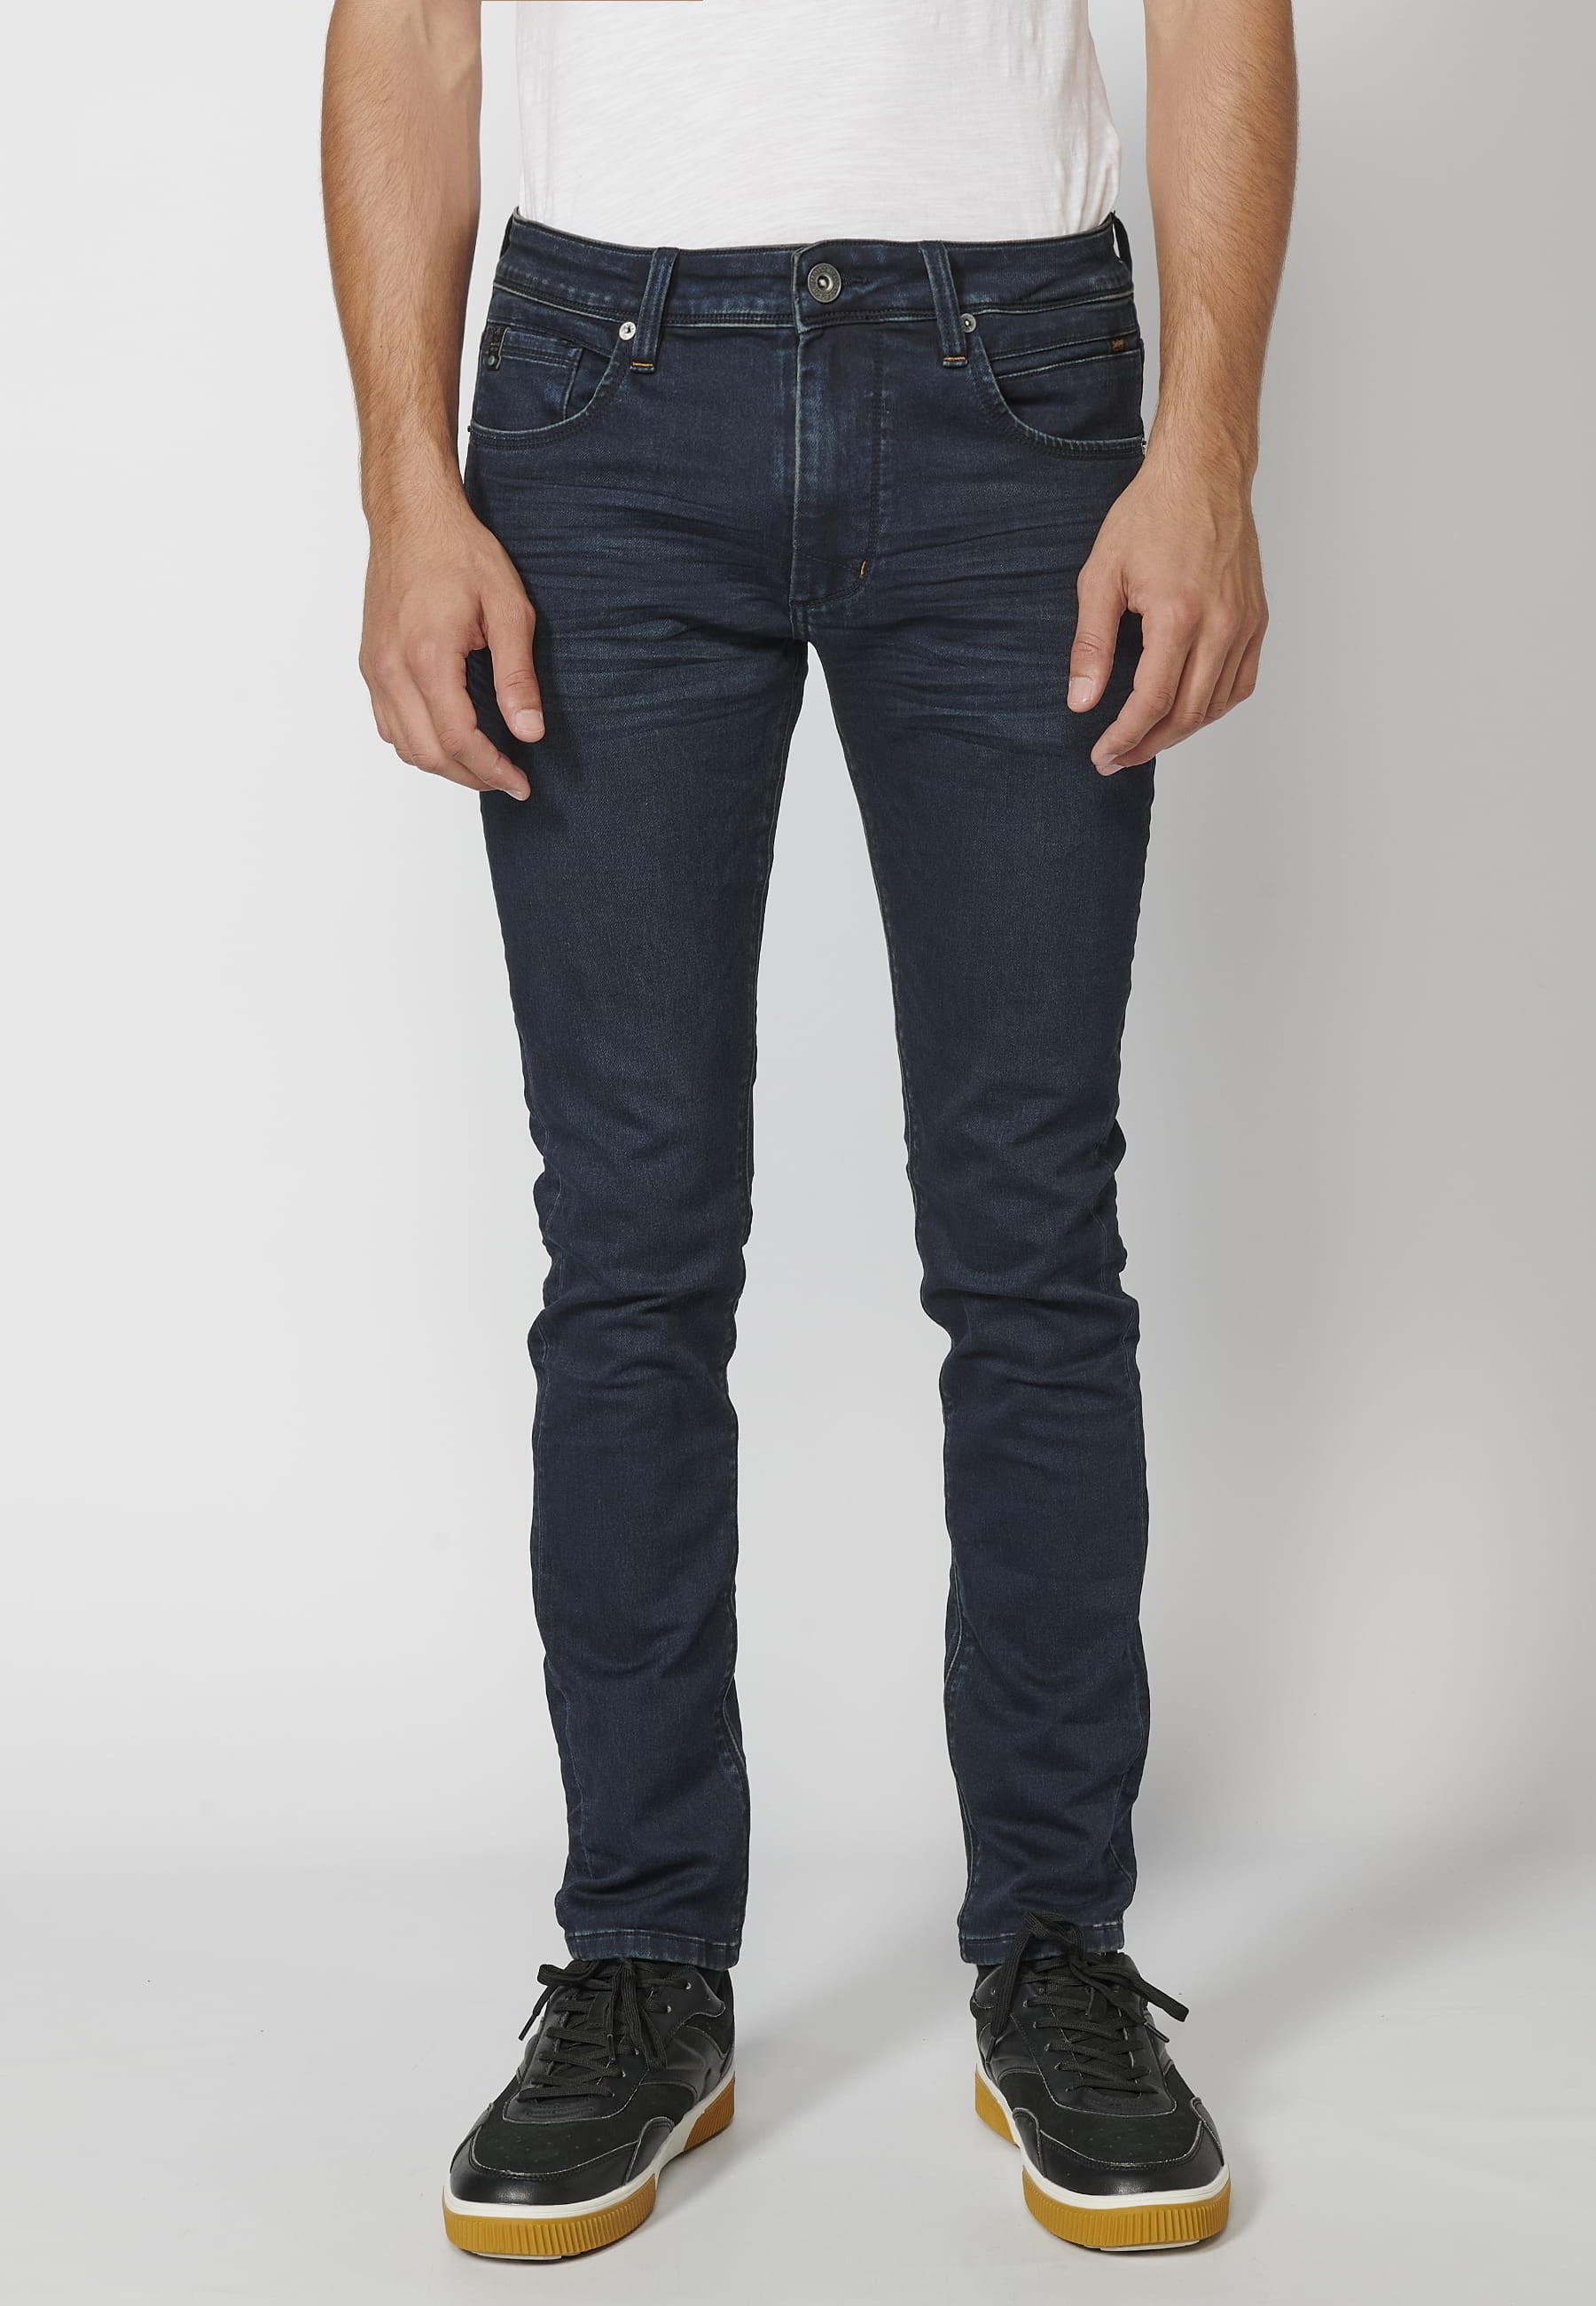 Pantalon Jean long coupe slim, couleur Bleu Foncé pour Homme 2